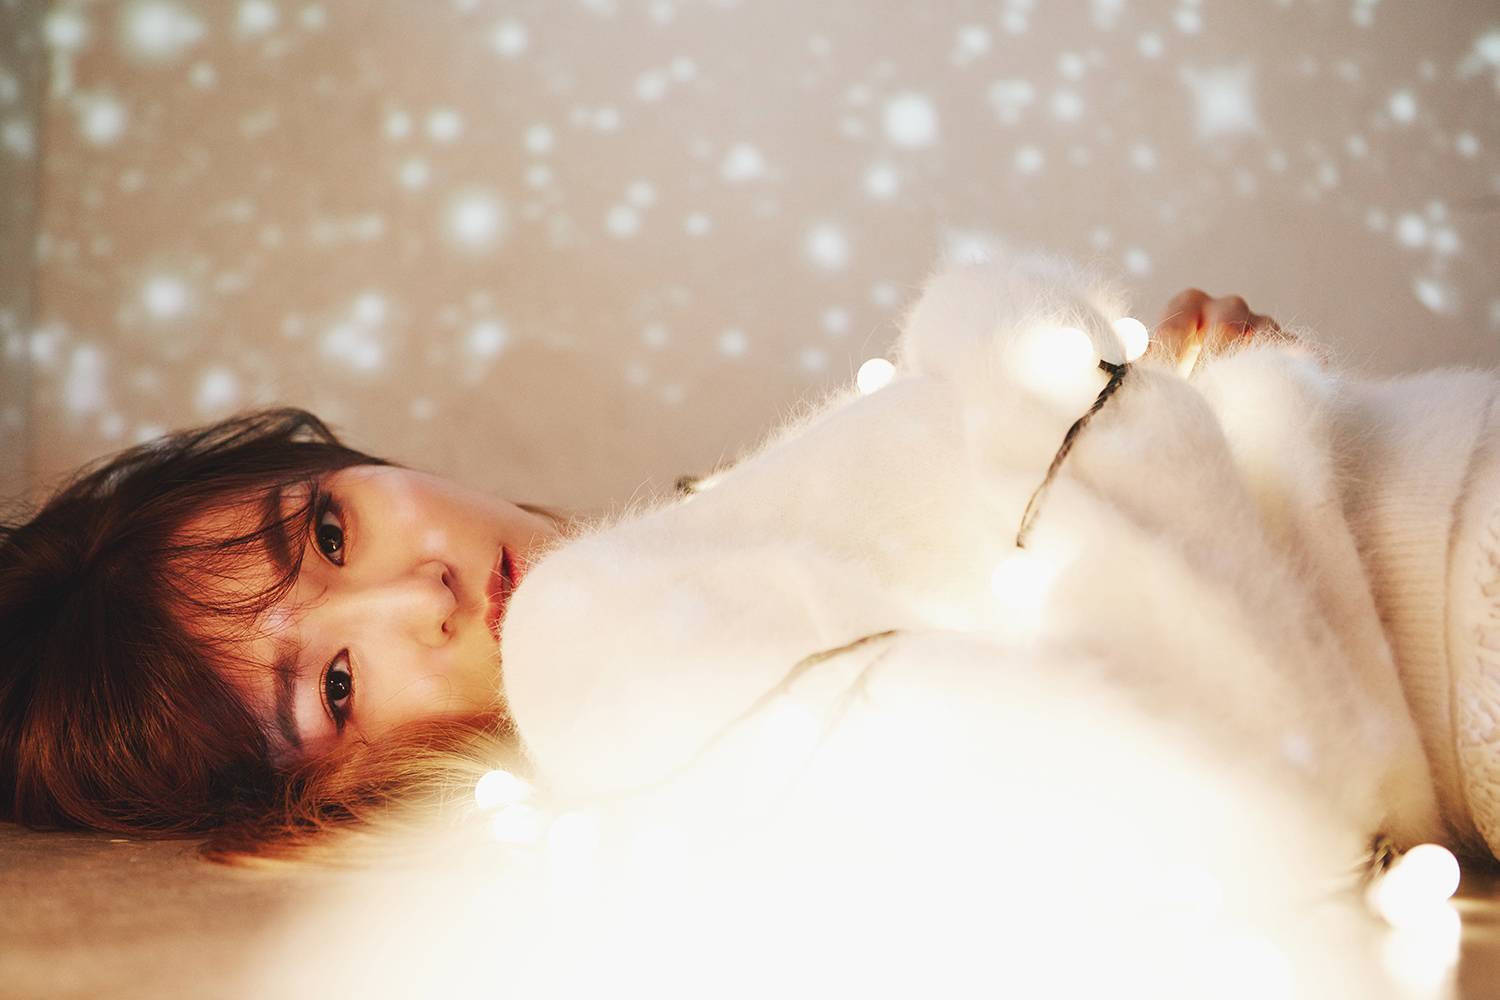 4일(금), 소녀시대(少女時代, SNSD) 태티서 크리스마스 스페셜 앨범 'Dear Santa' 발매 예정 | 인스티즈